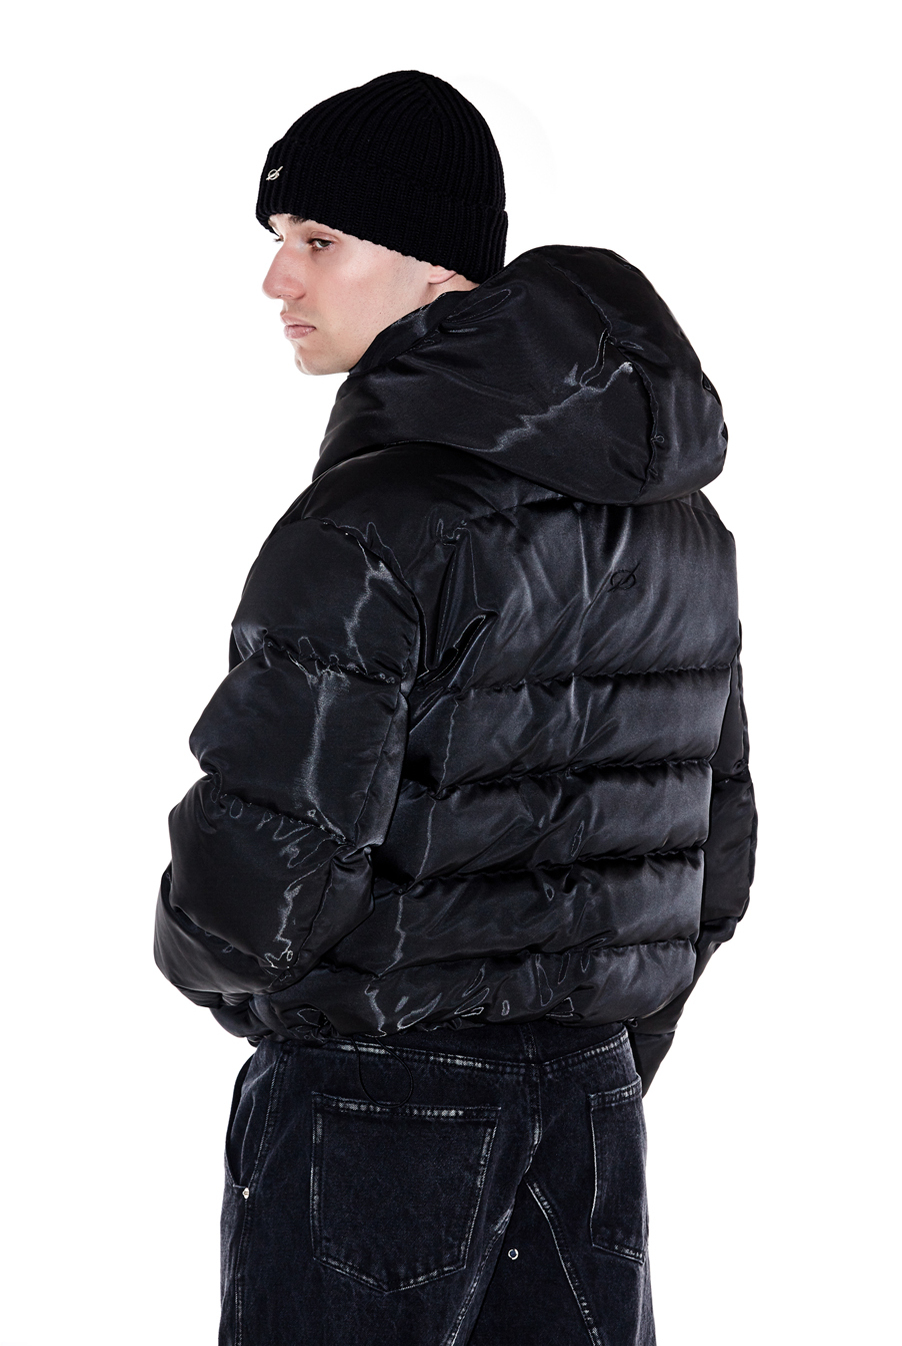 Tunnel Lining hoodie down jacket - Black